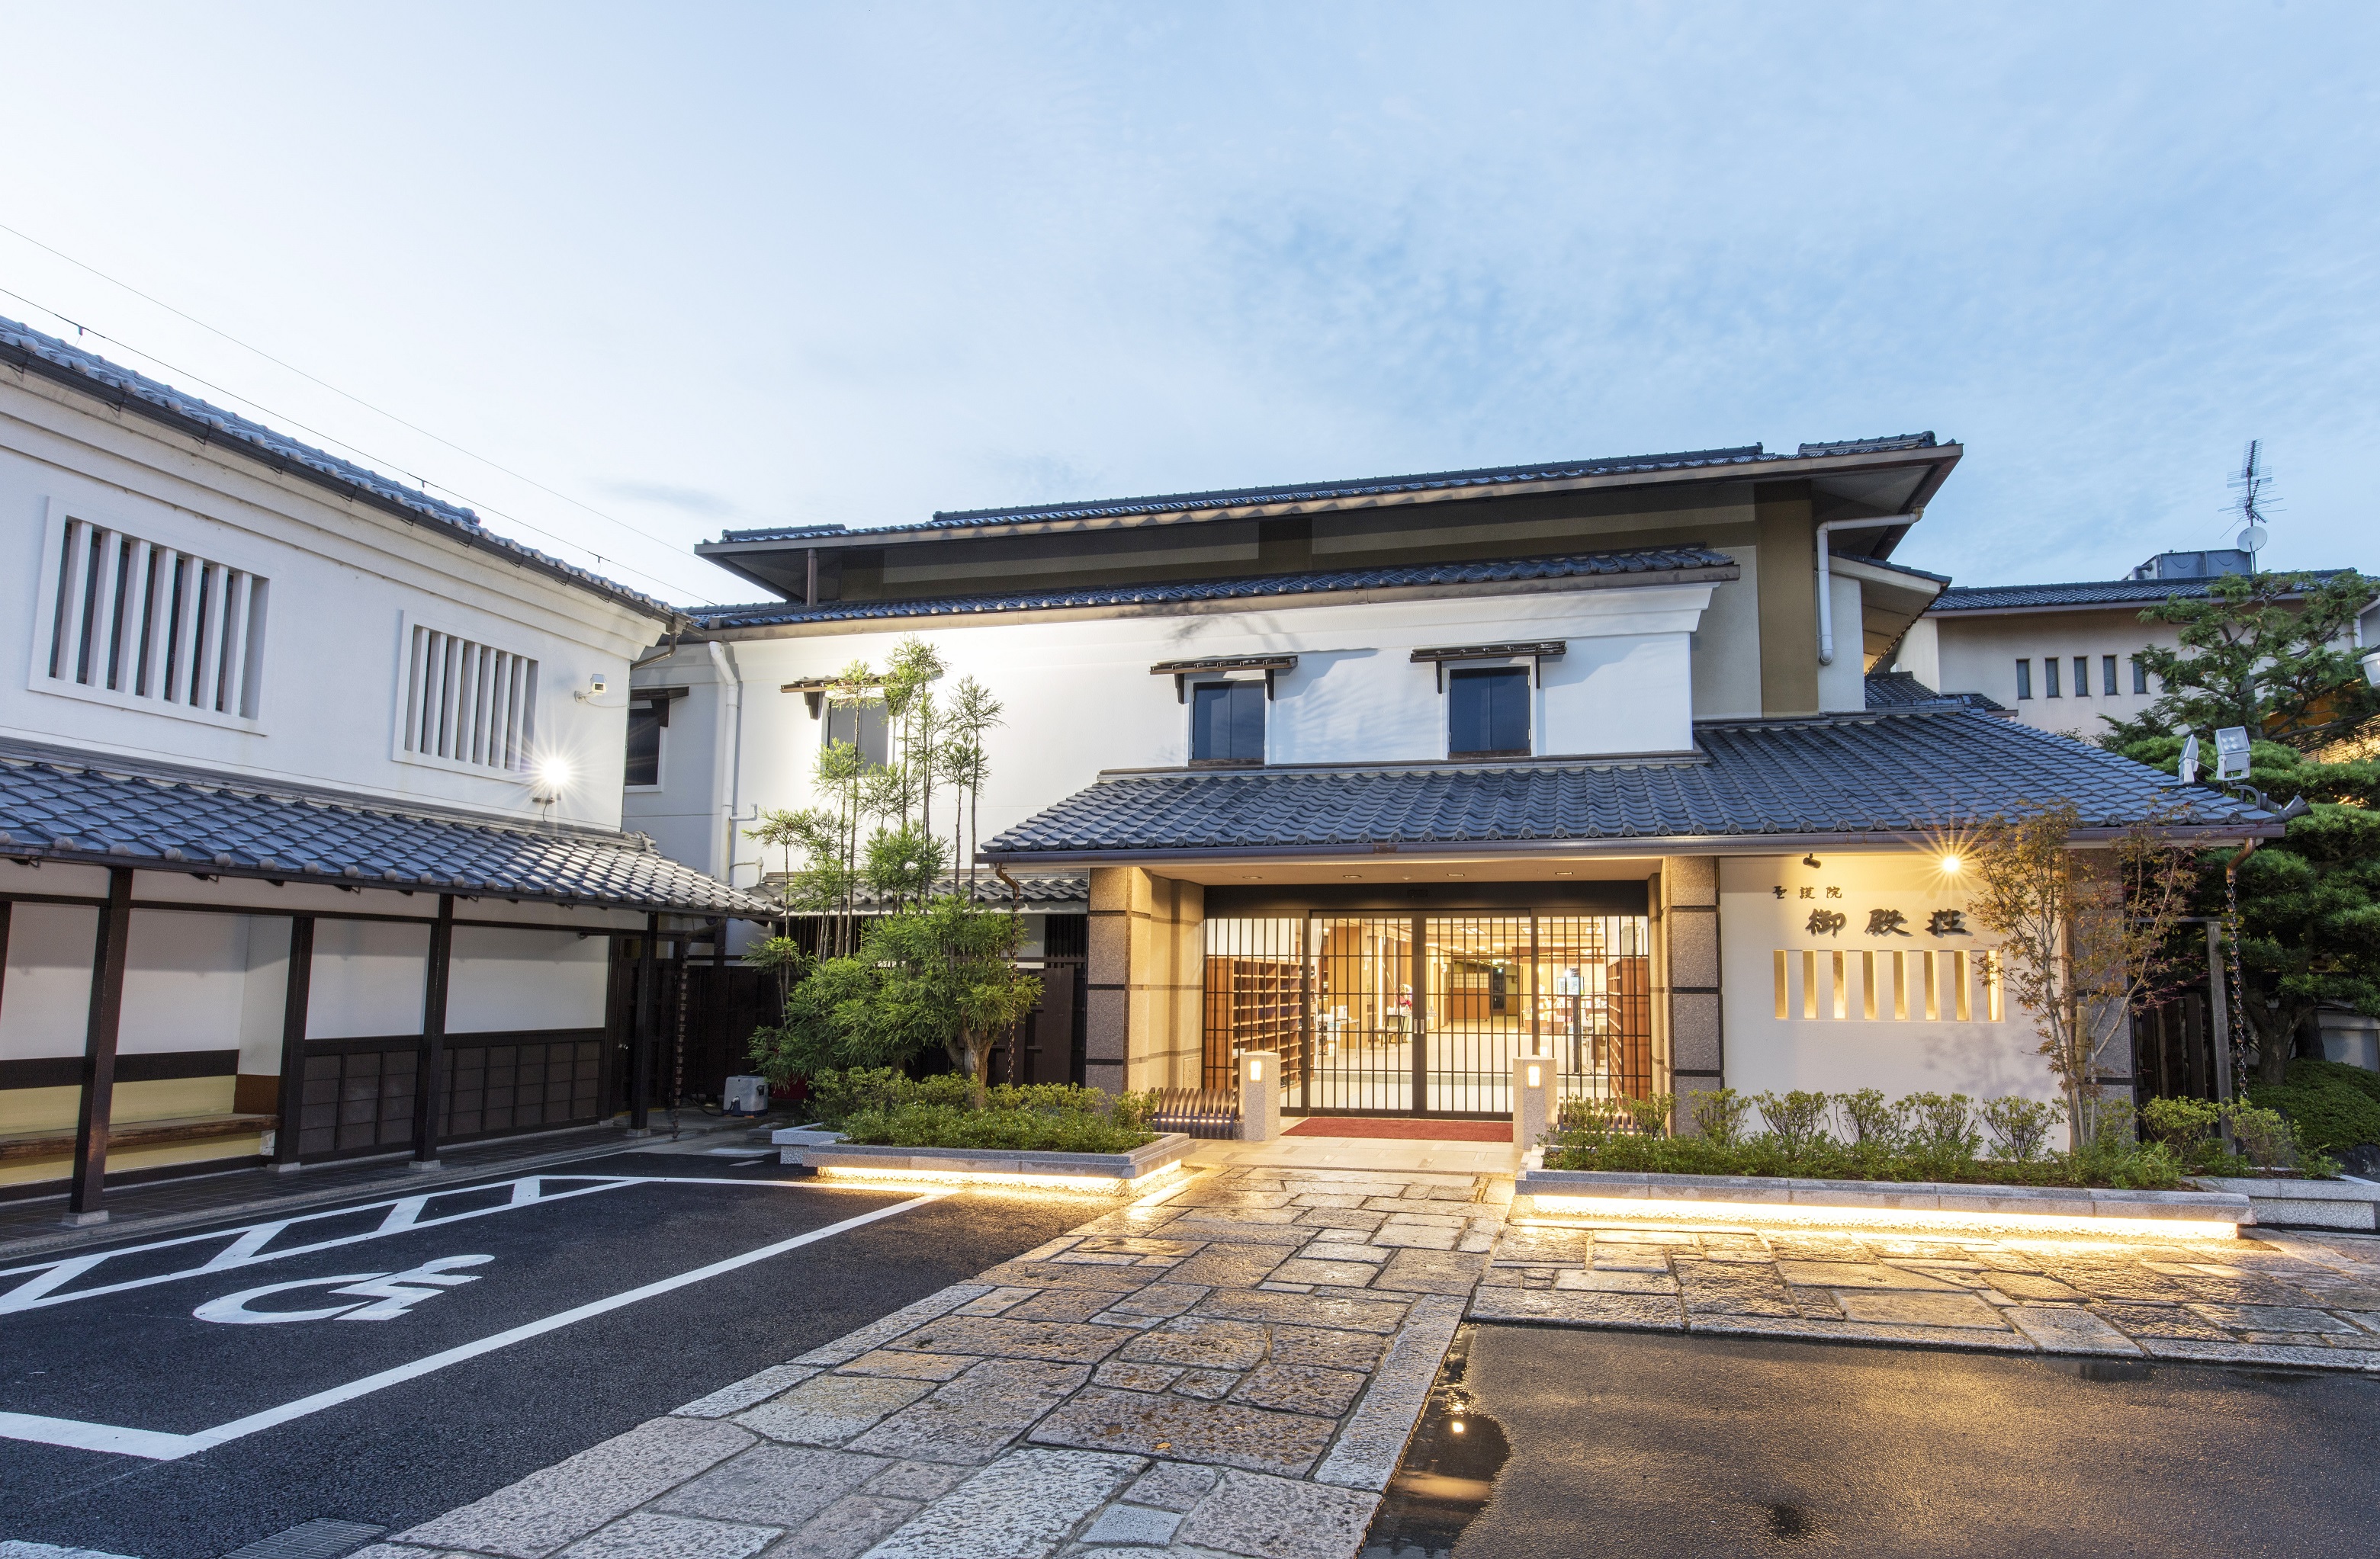 京都・奈良旅行で一人一泊1万円前後で泊まれる宿を教えてください。